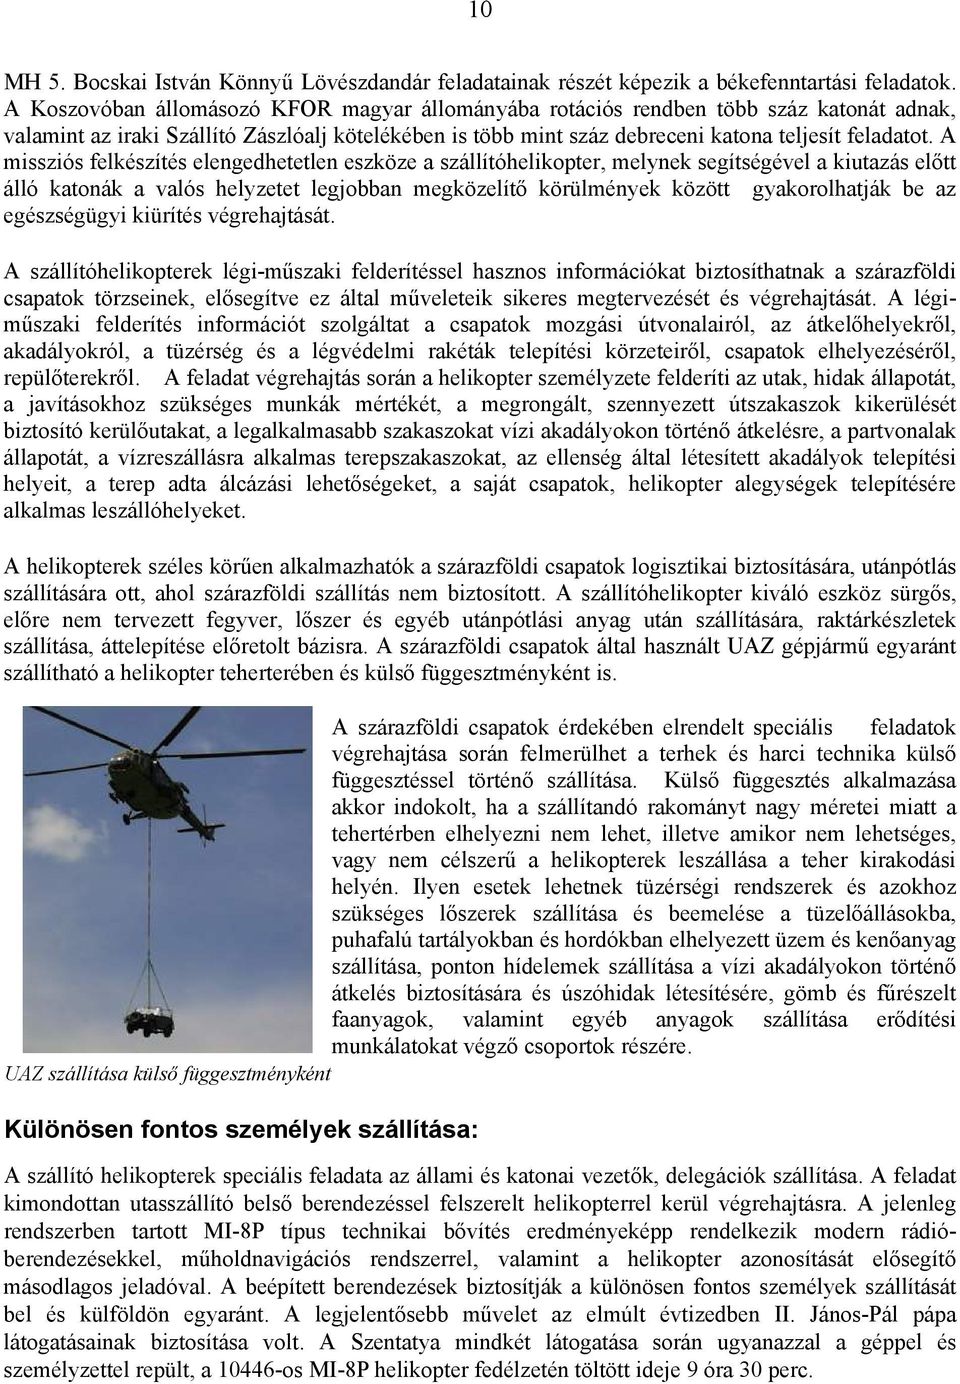 A missziós felkészítés elengedhetetlen eszköze a szállítóhelikopter, melynek segítségével a kiutazás előtt álló katonák a valós helyzetet legjobban megközelítő körülmények között gyakorolhatják be az